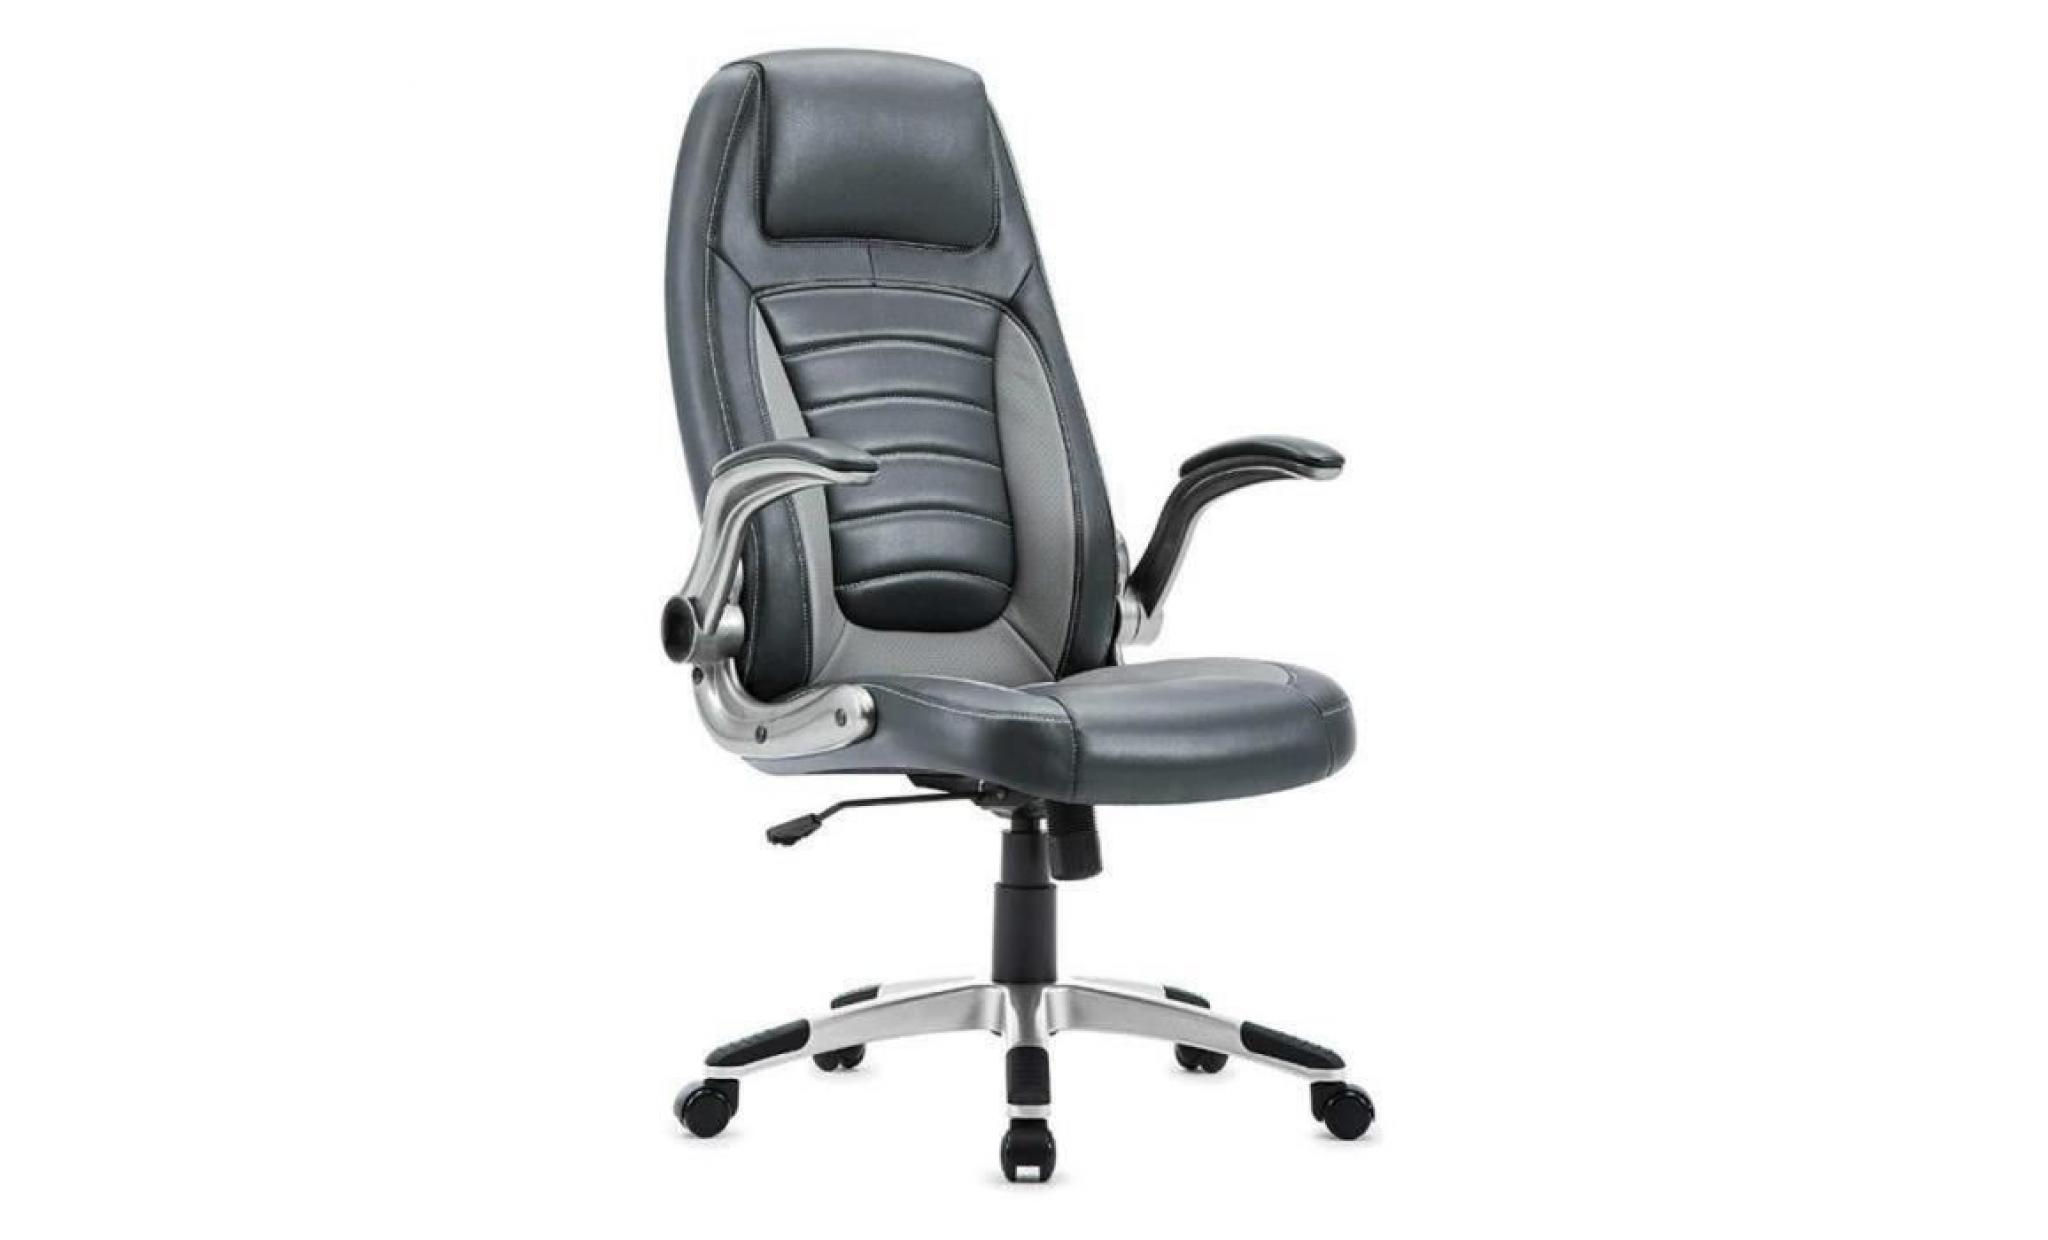 chaise de bureau   fauteuil gamer   siège pu hauteur réglable   chaise d'ordinateur   gris foncé    intimate wm heart pas cher